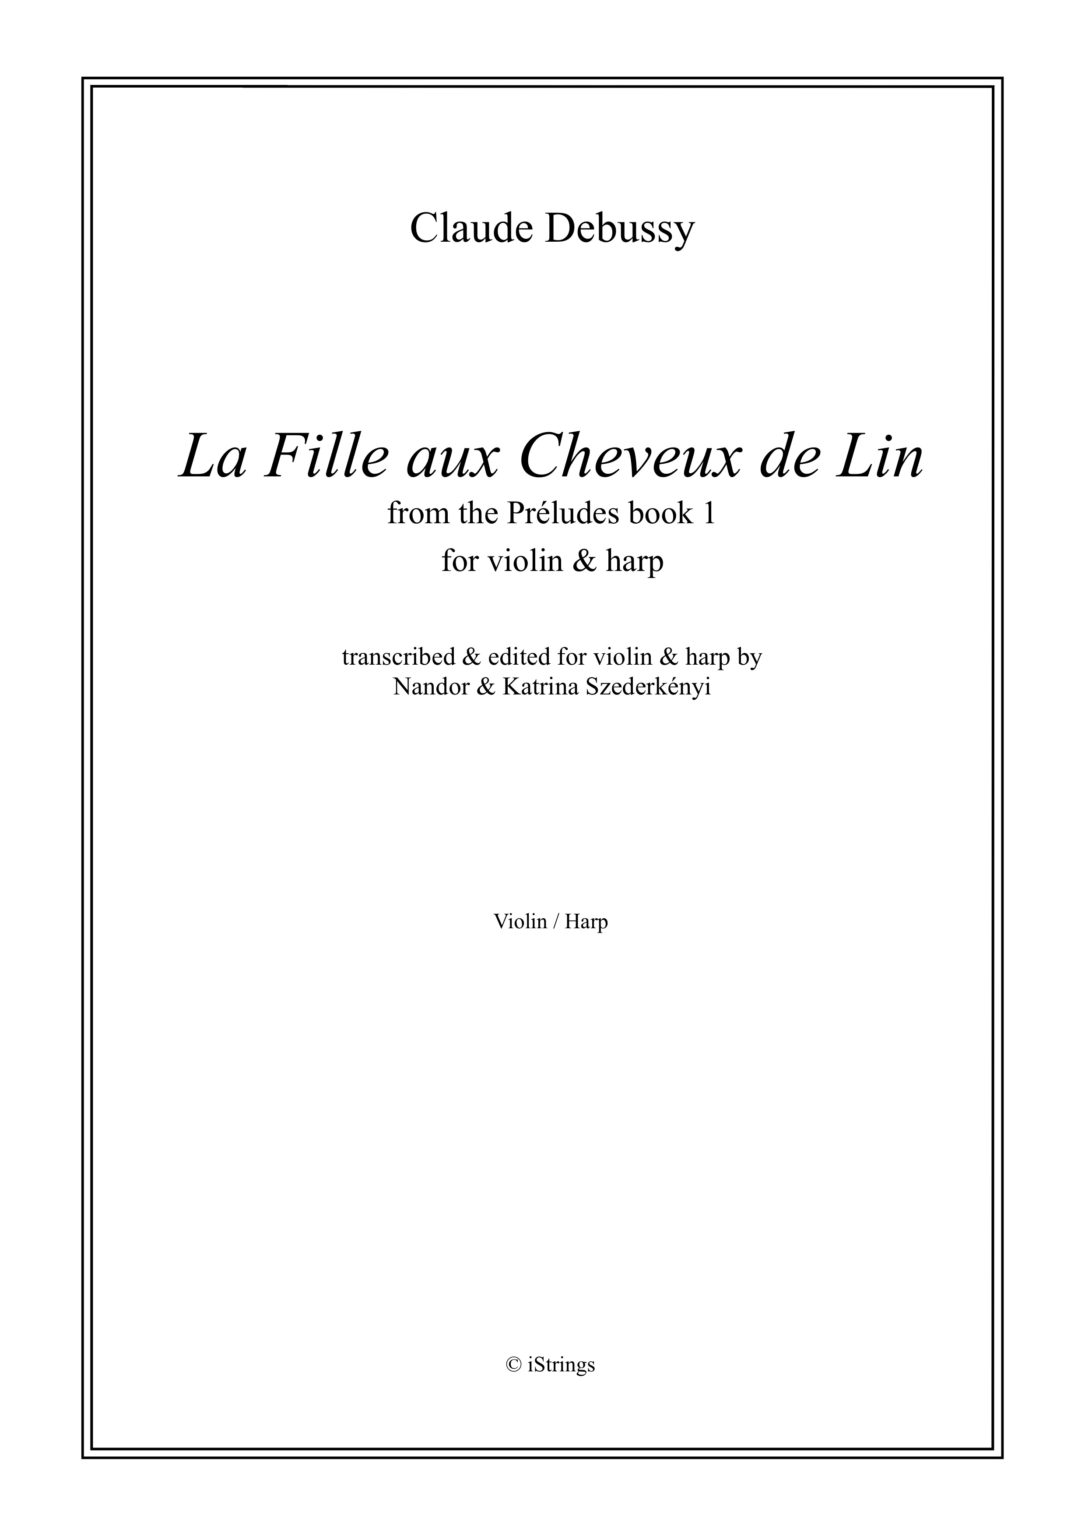 La Fille aux Cheveux de Lin und Bruyeres para saxofón alto o soprano. Claude Debussy